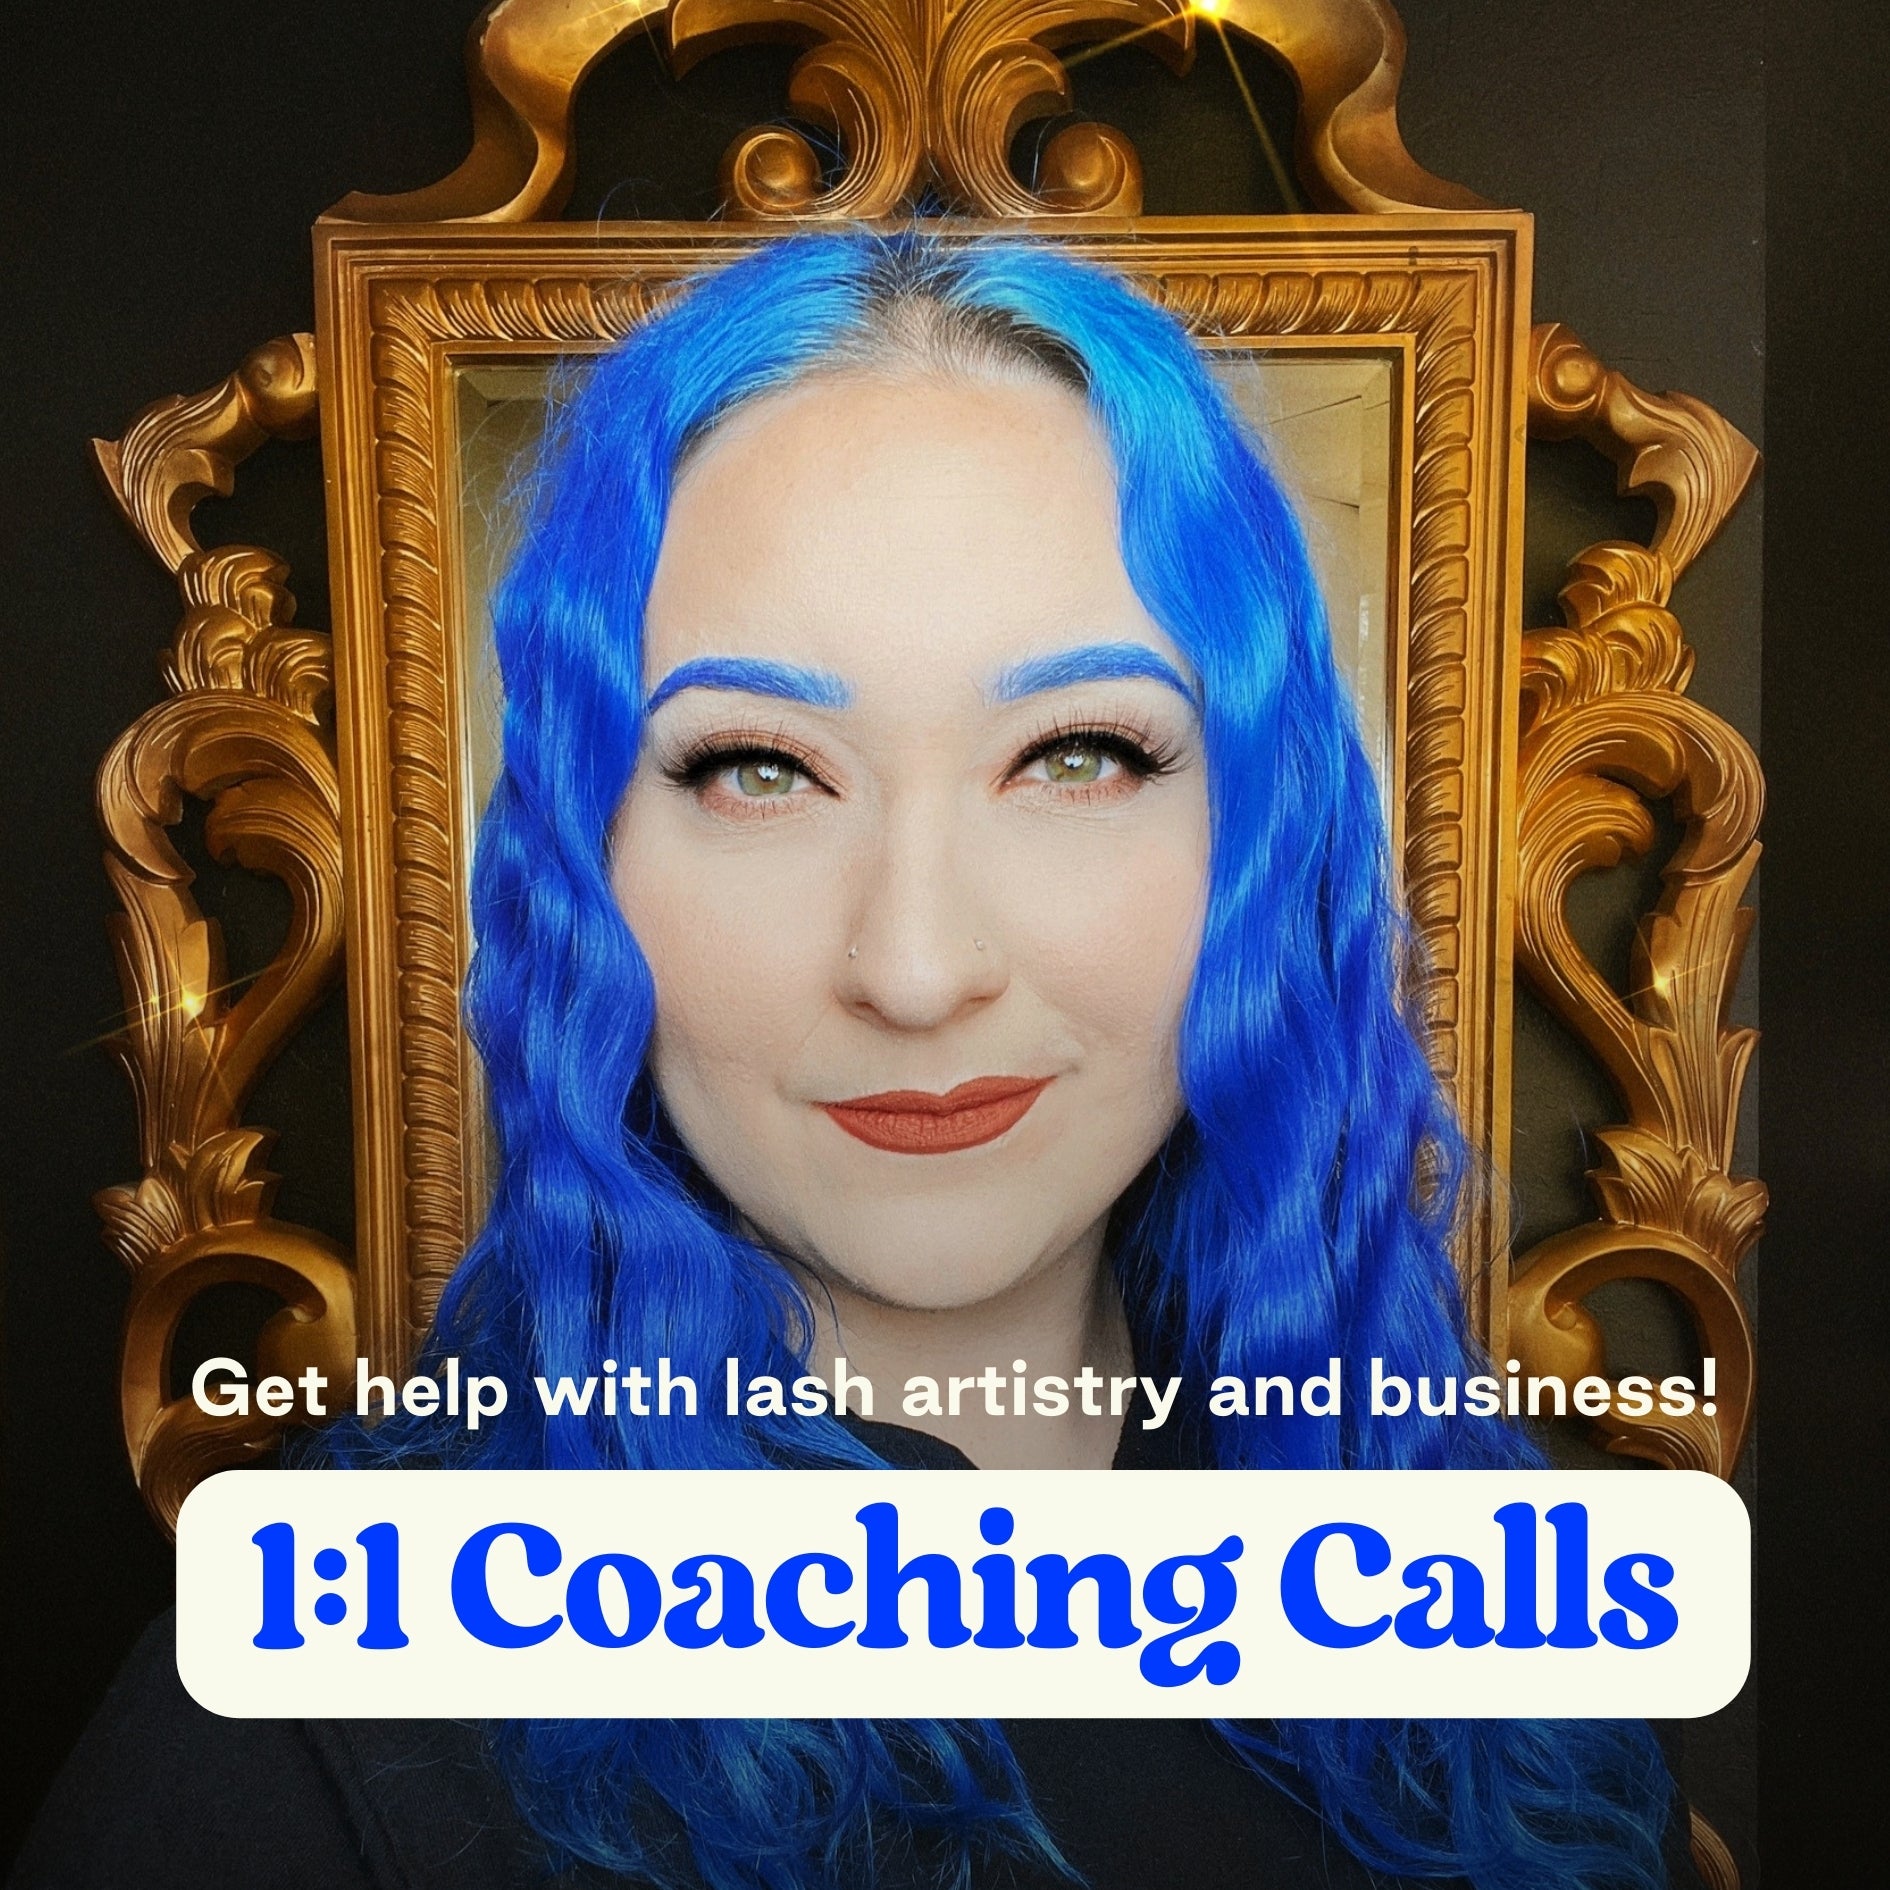 1:1 Coaching Calls